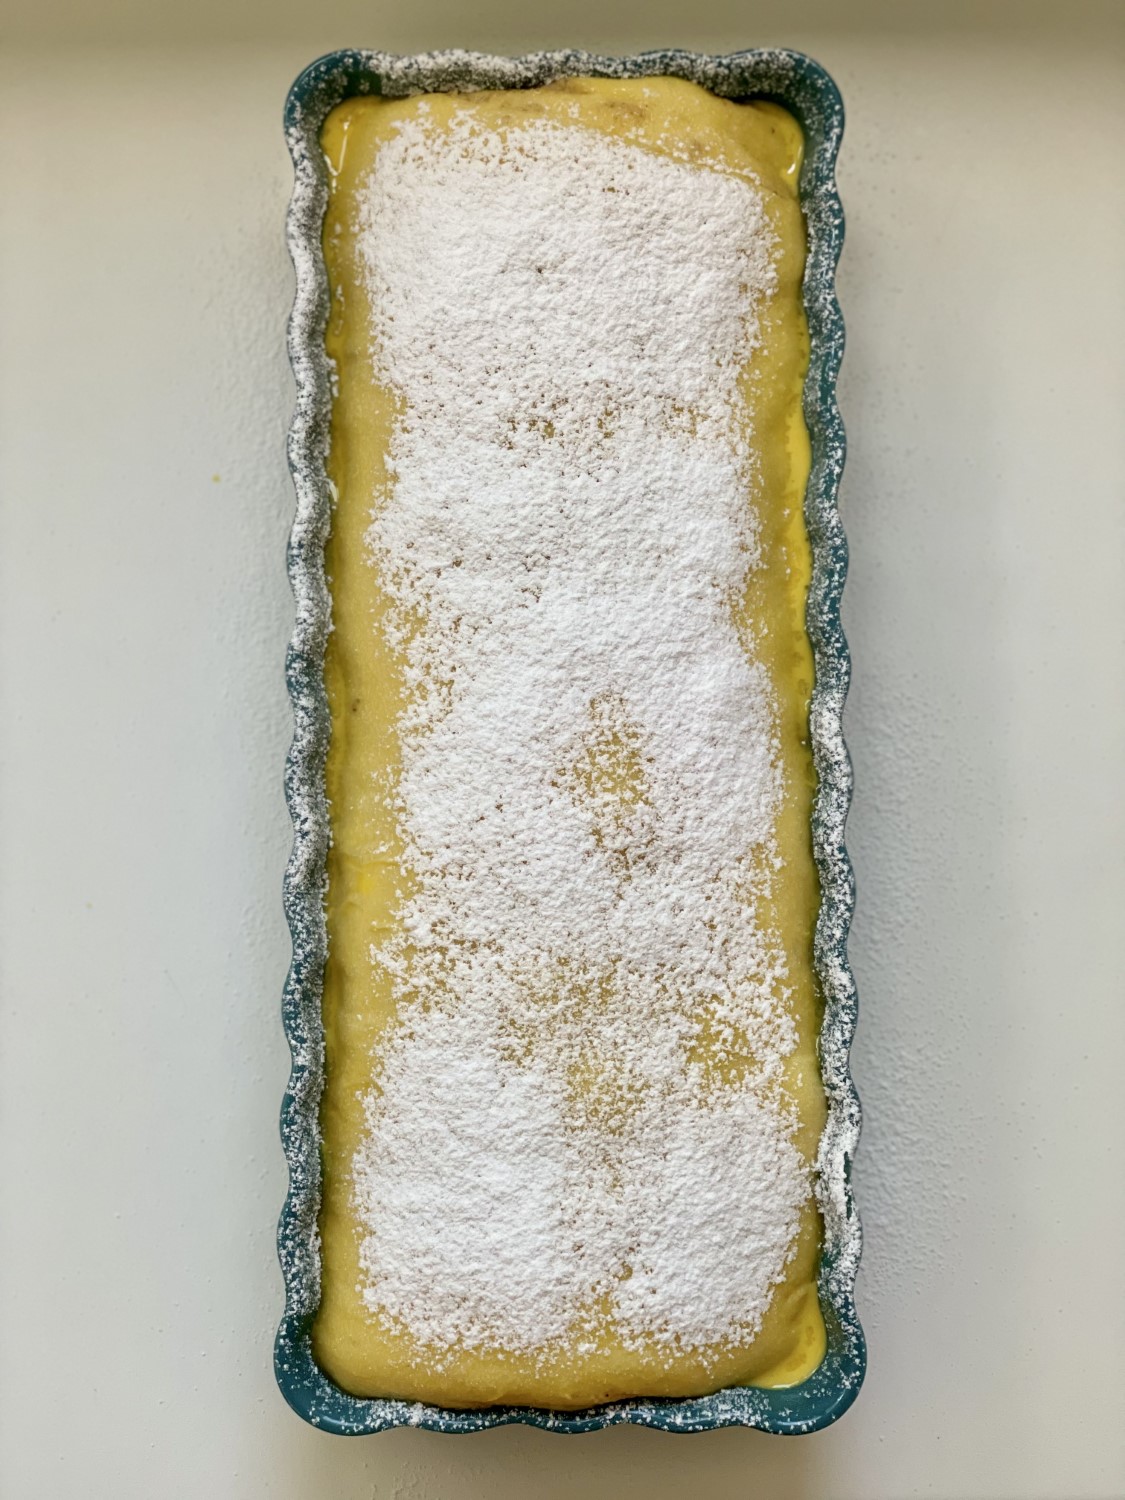 Obdélníková koláčová forma 15 x 36 cm od Emile Henry